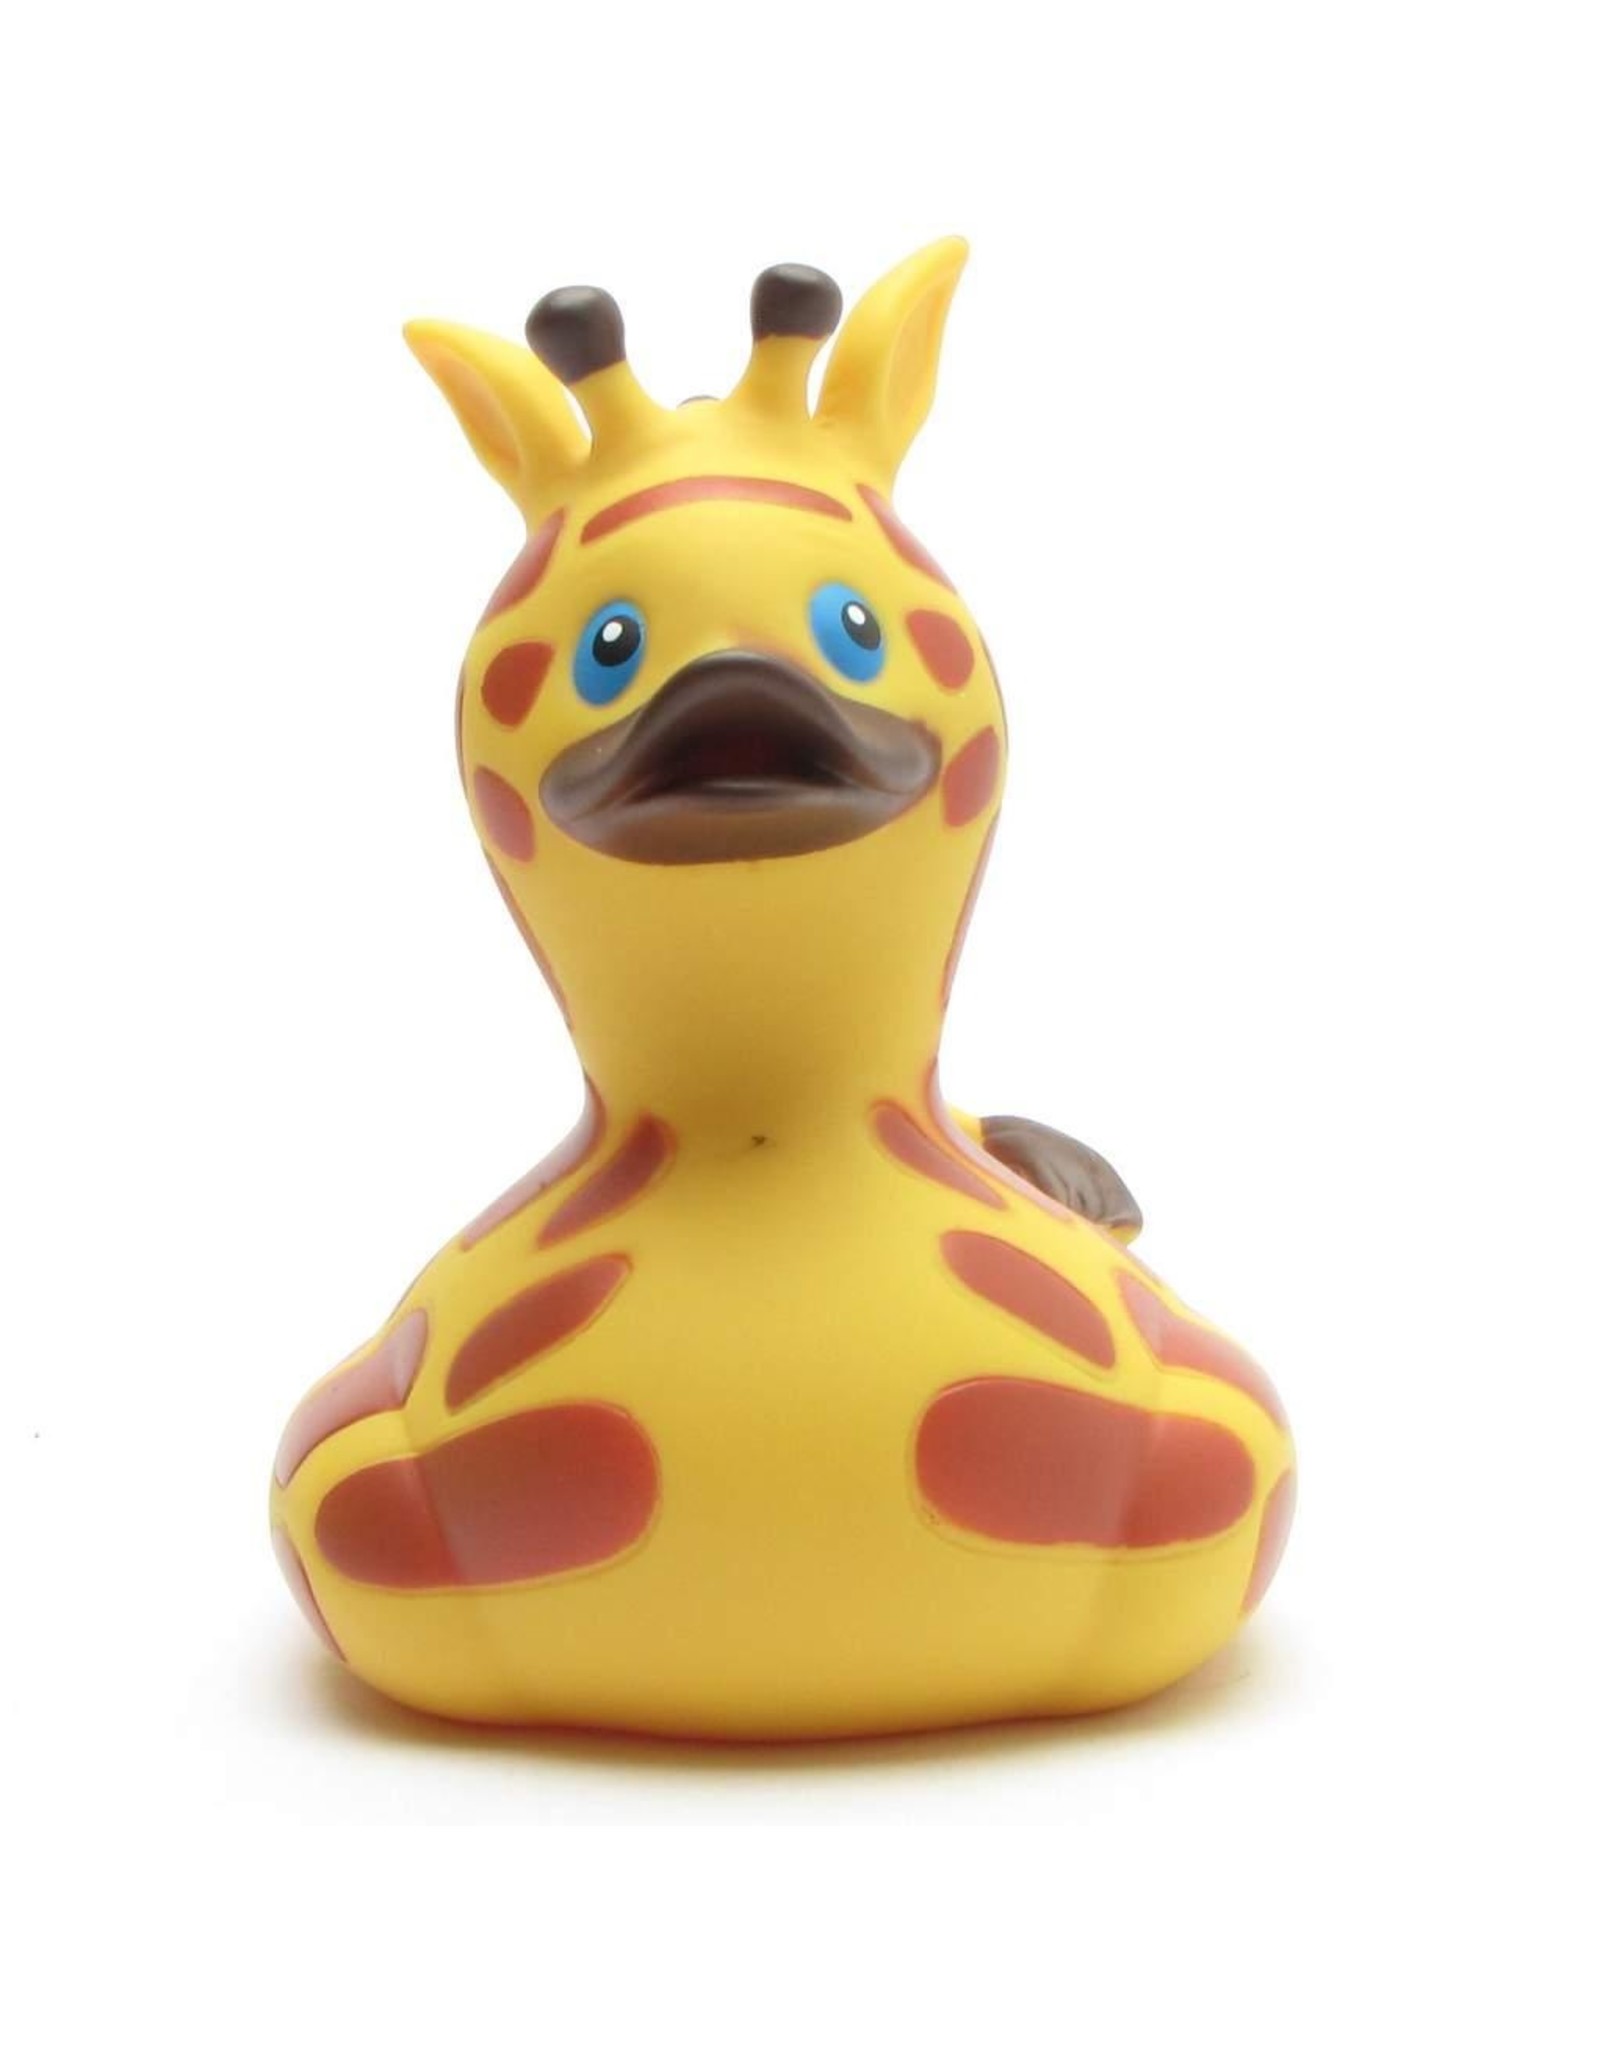 Giraffe Rubber Duck